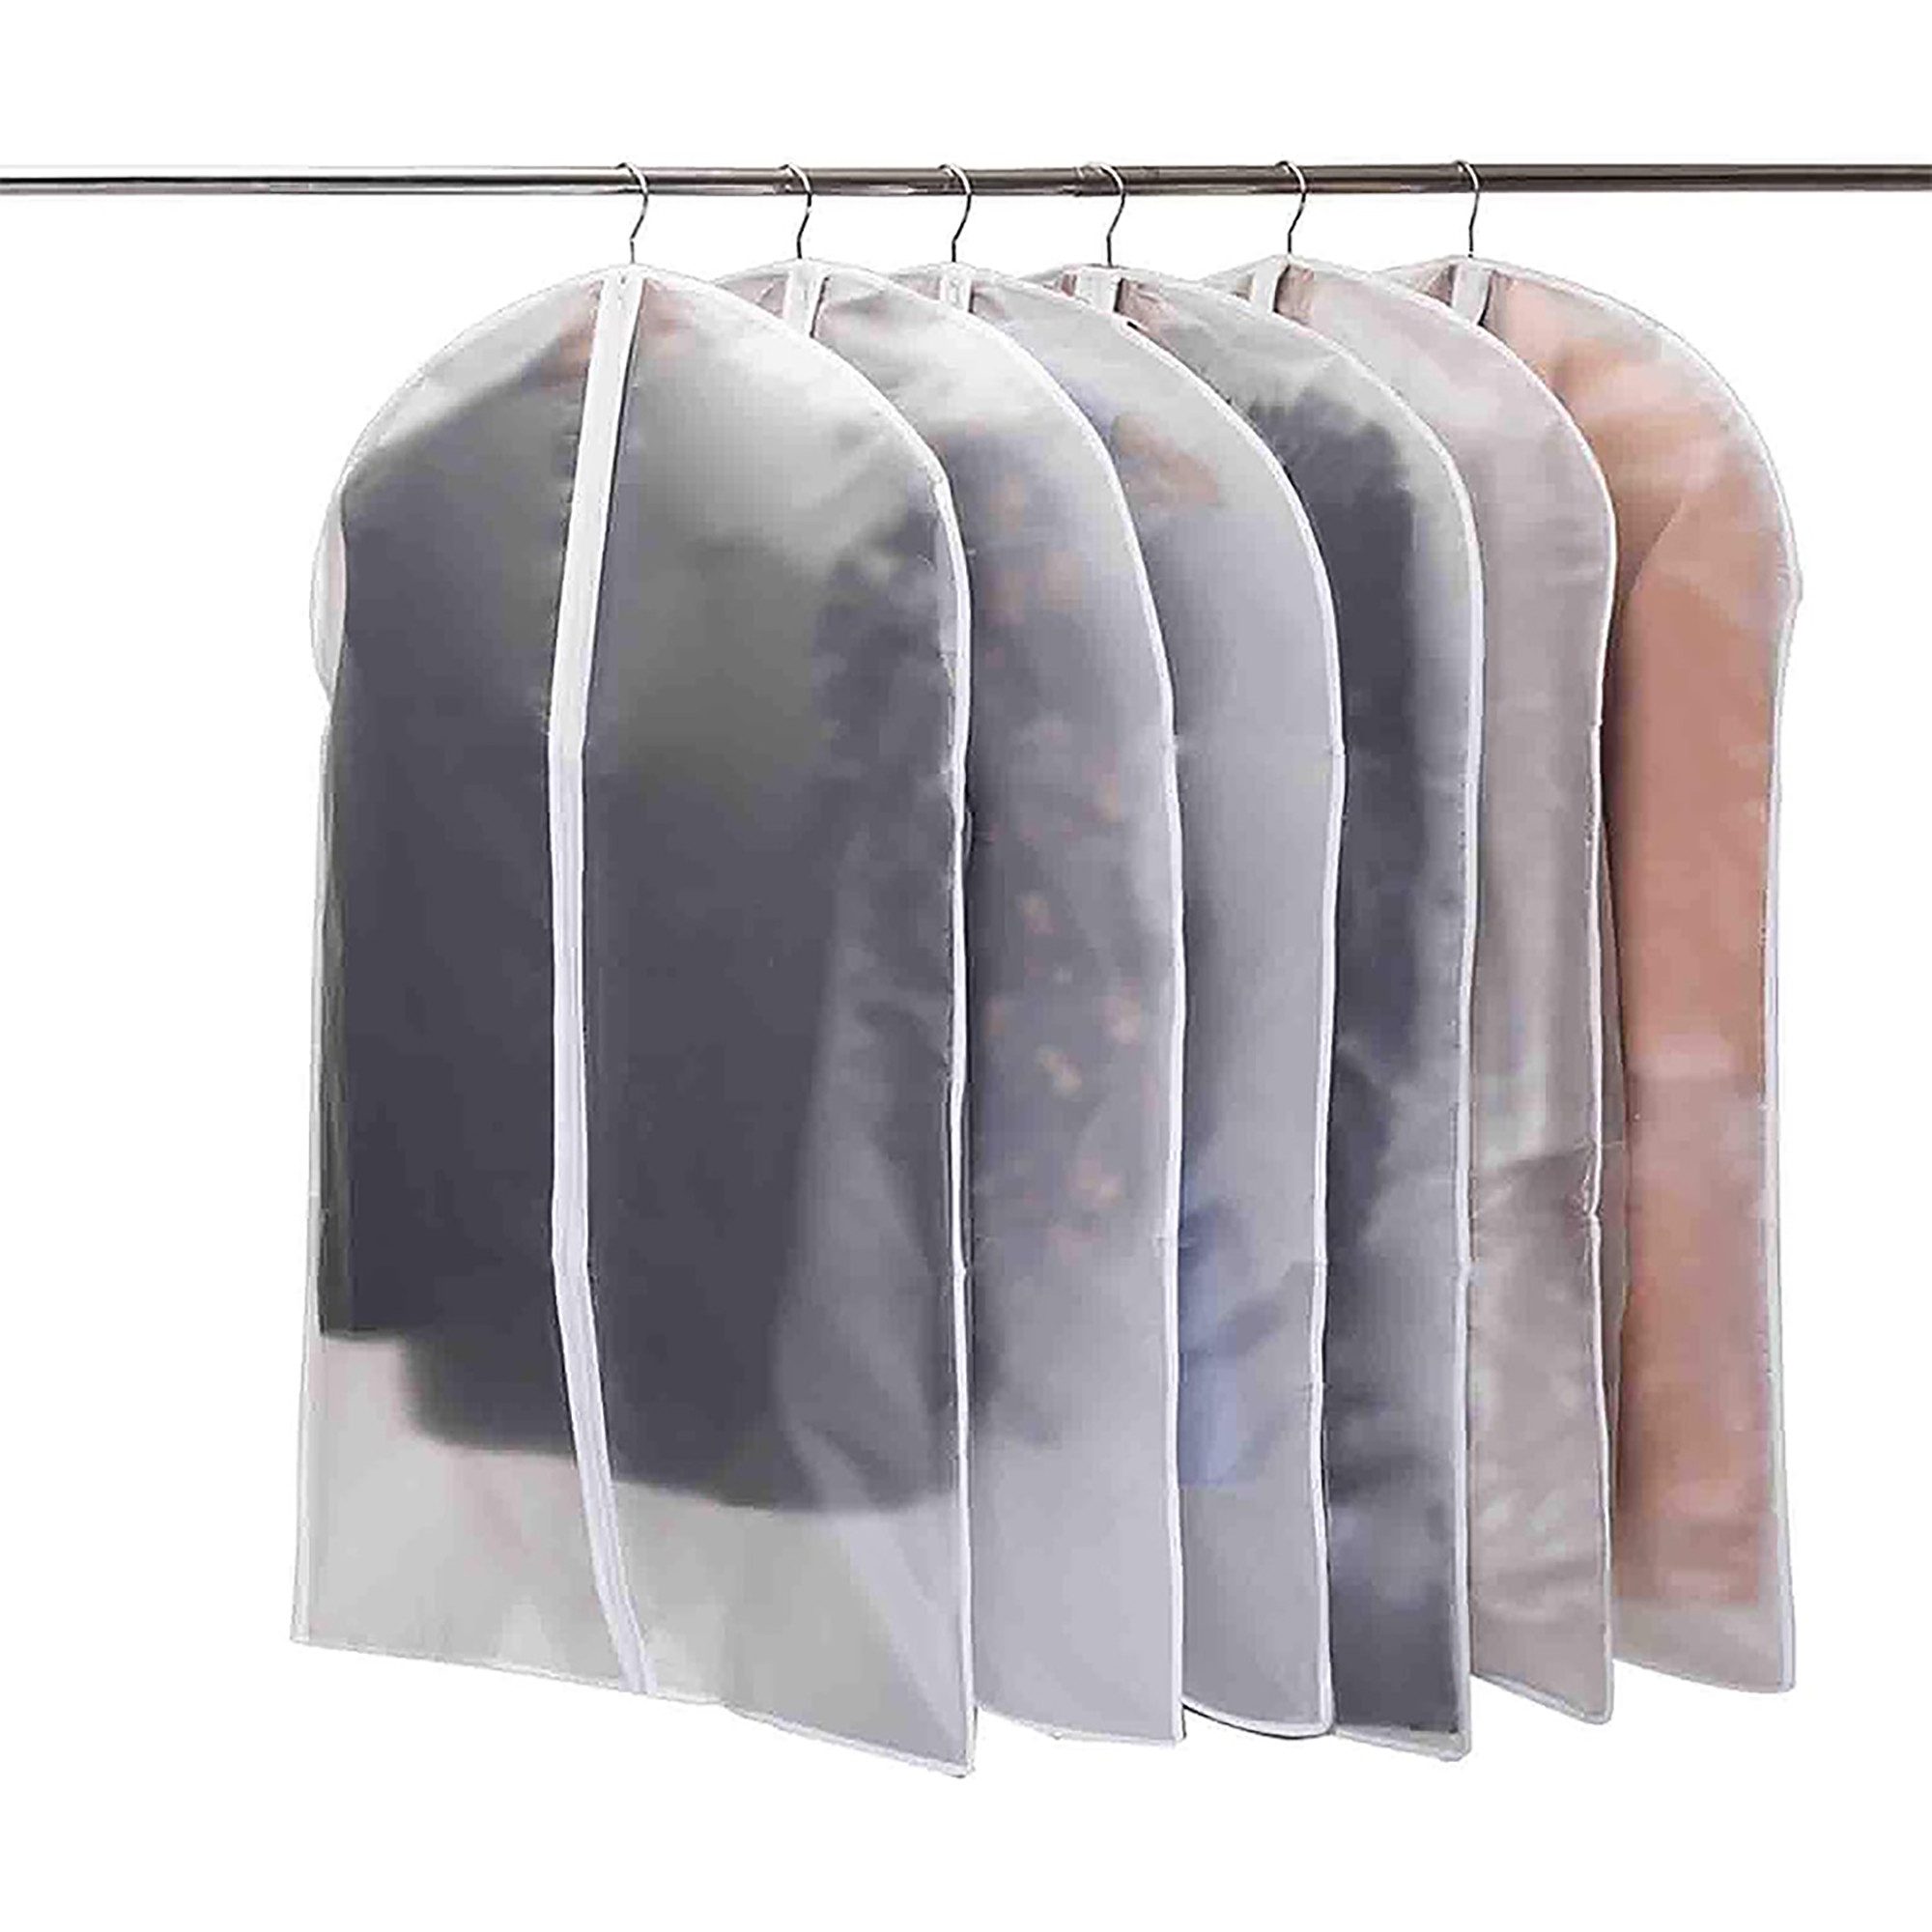 Mrichbez Kleidersack Kleidersack Anzug 6 Stück Hochwertiger Kleidersäcke (1 St., für Anzüge Kleider Mäntel Sakkos Hemden Abendkleider Anzugsack) Transparent 60x100 cm Atmungsaktiver Stoff